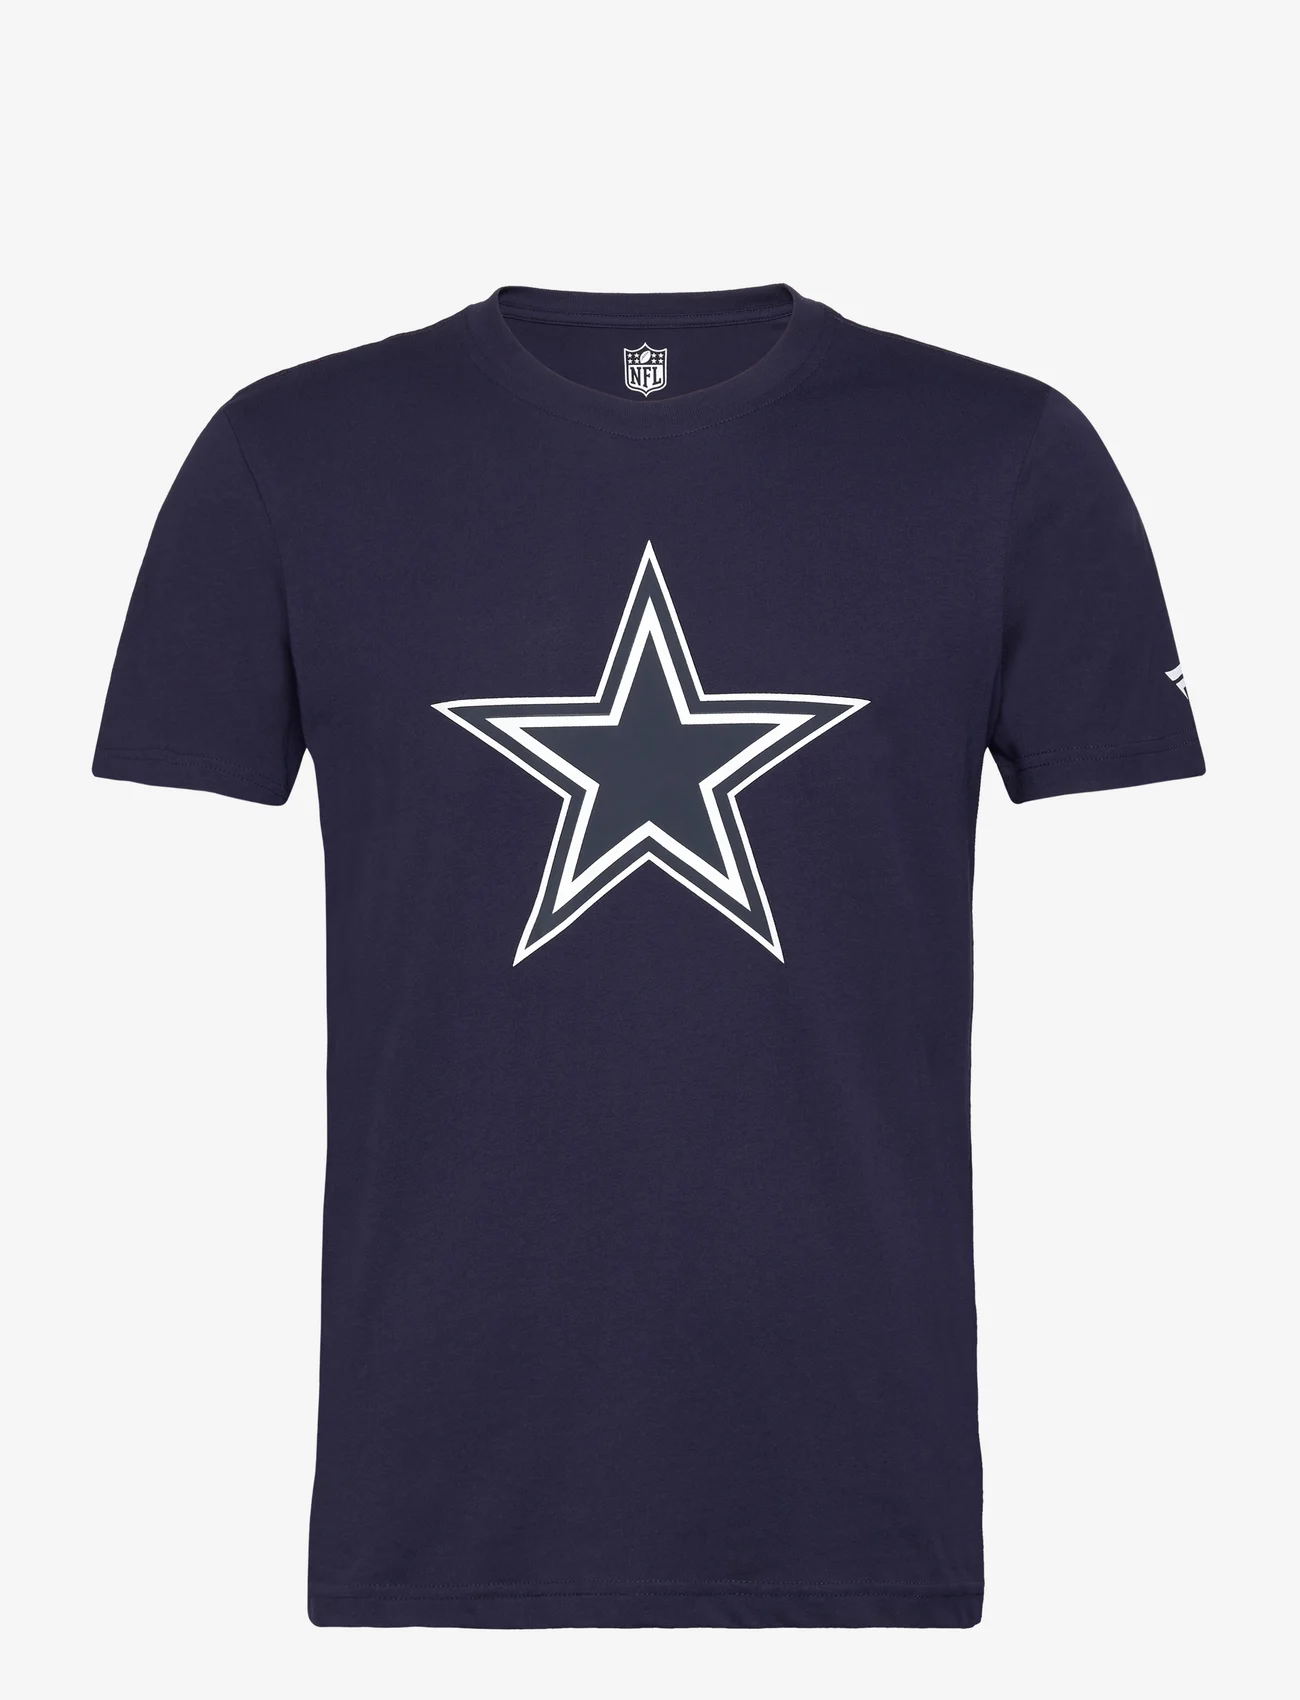 Fanatics - Dallas Cowboys Primary Logo Graphic T-Shirt - mažiausios kainos - maritime blue - 0